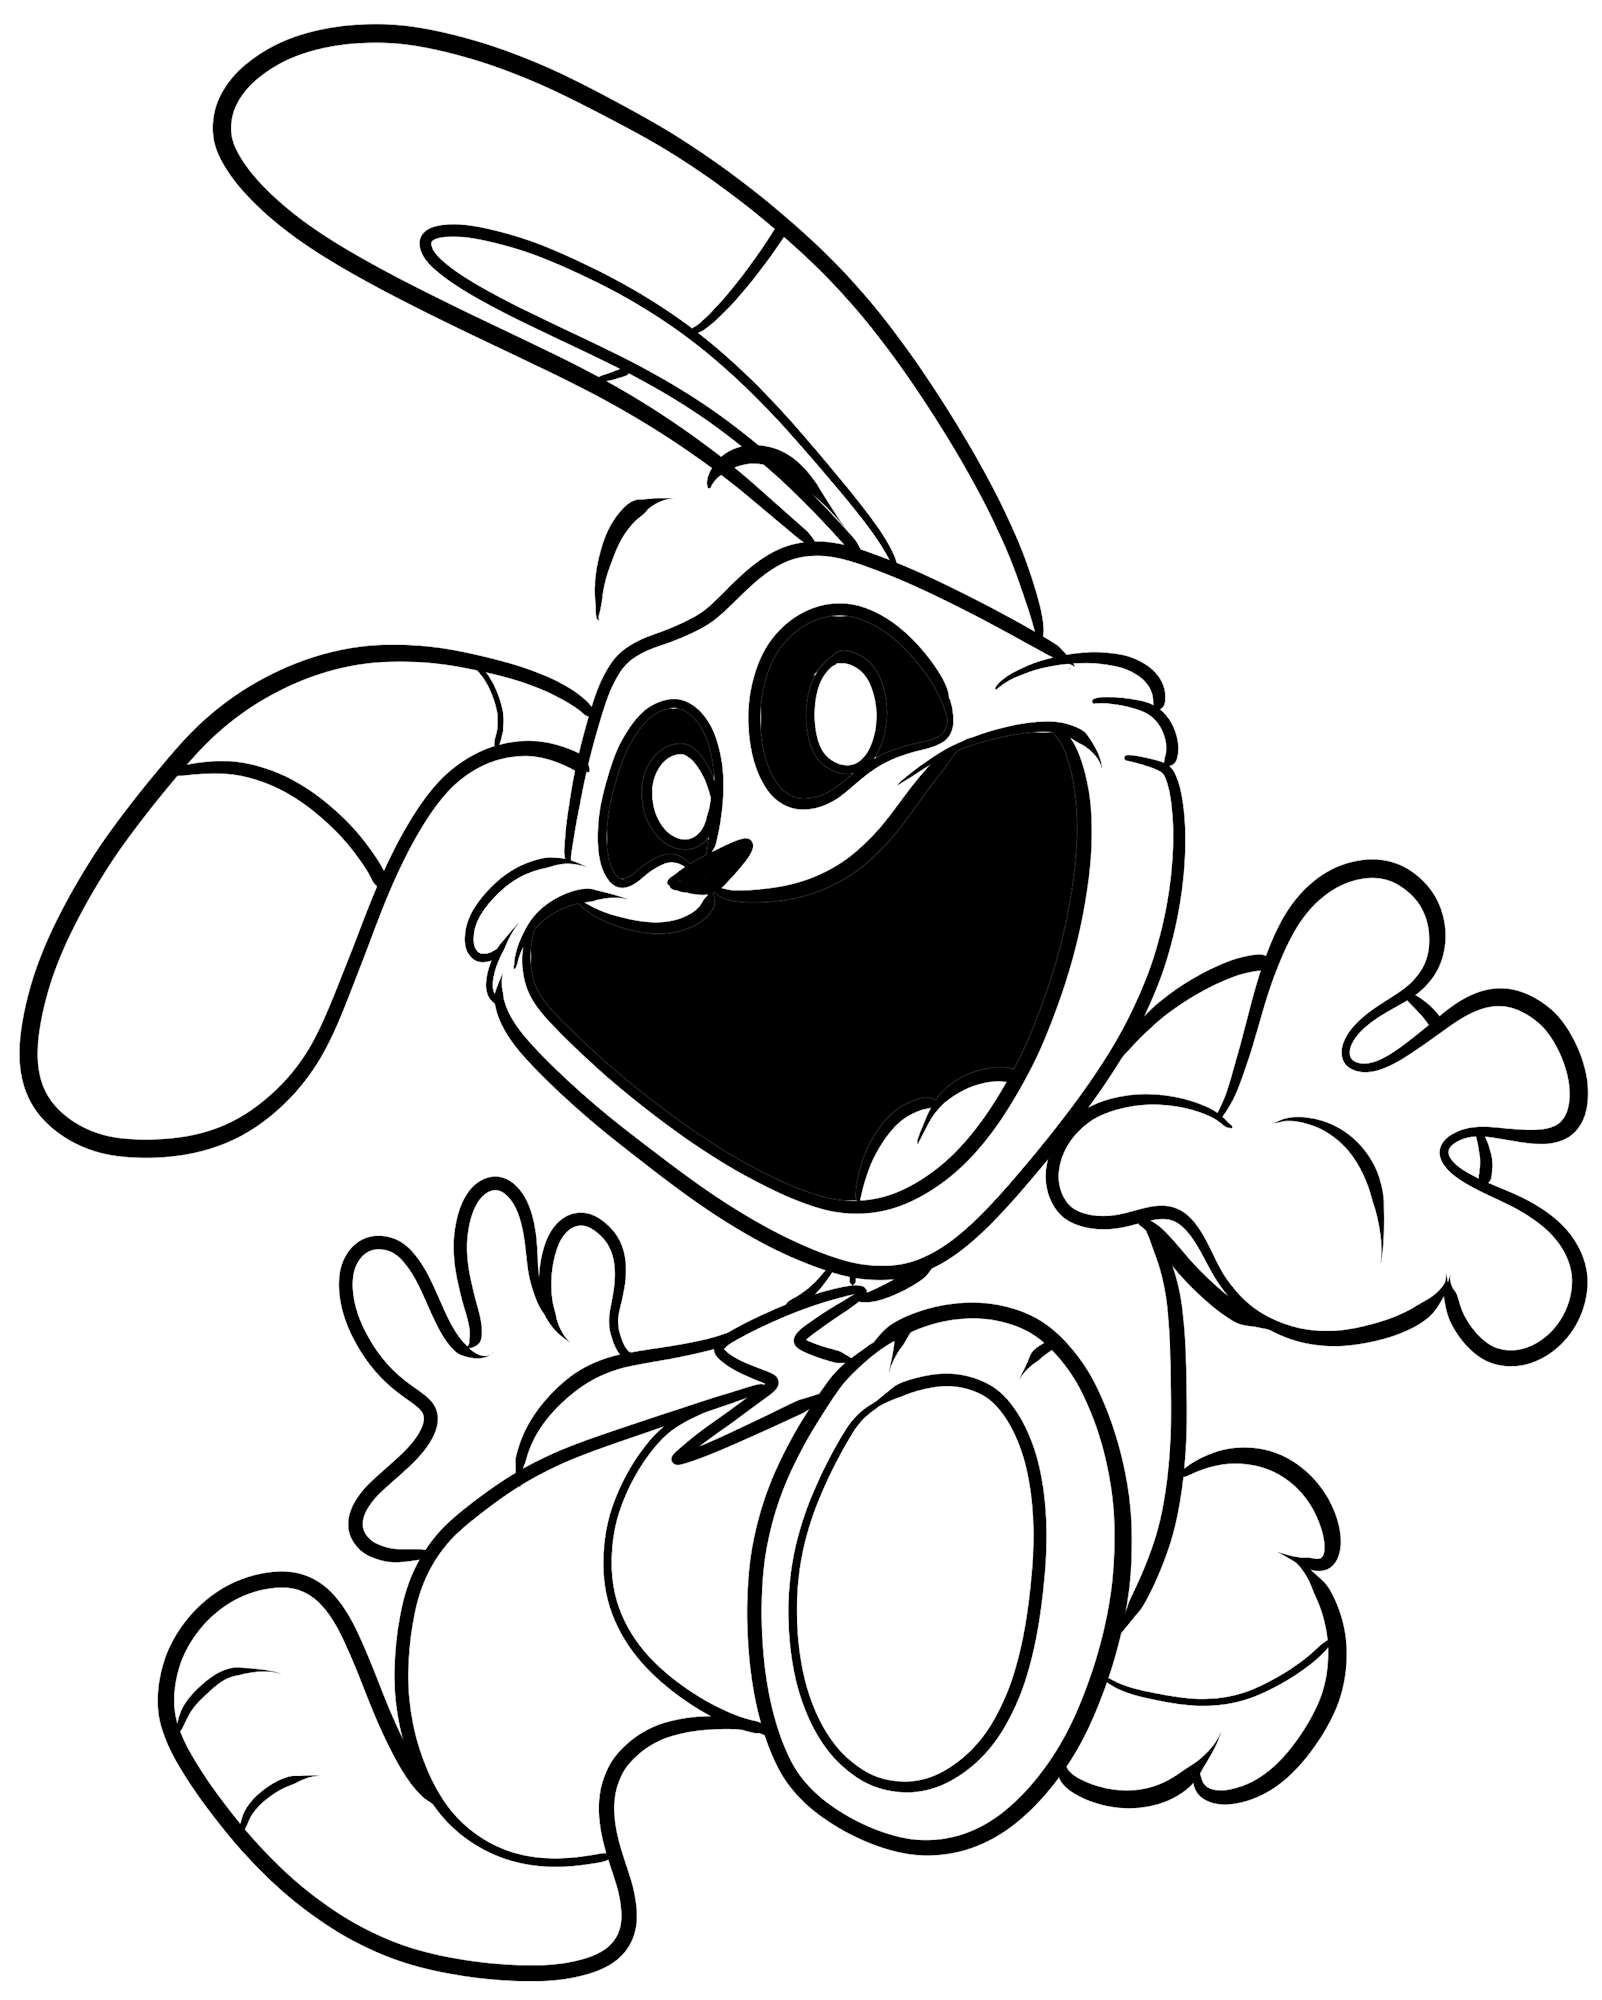 Dibujo de Hoppy Hopscotch de Smiling Critters para imprimir y colorear